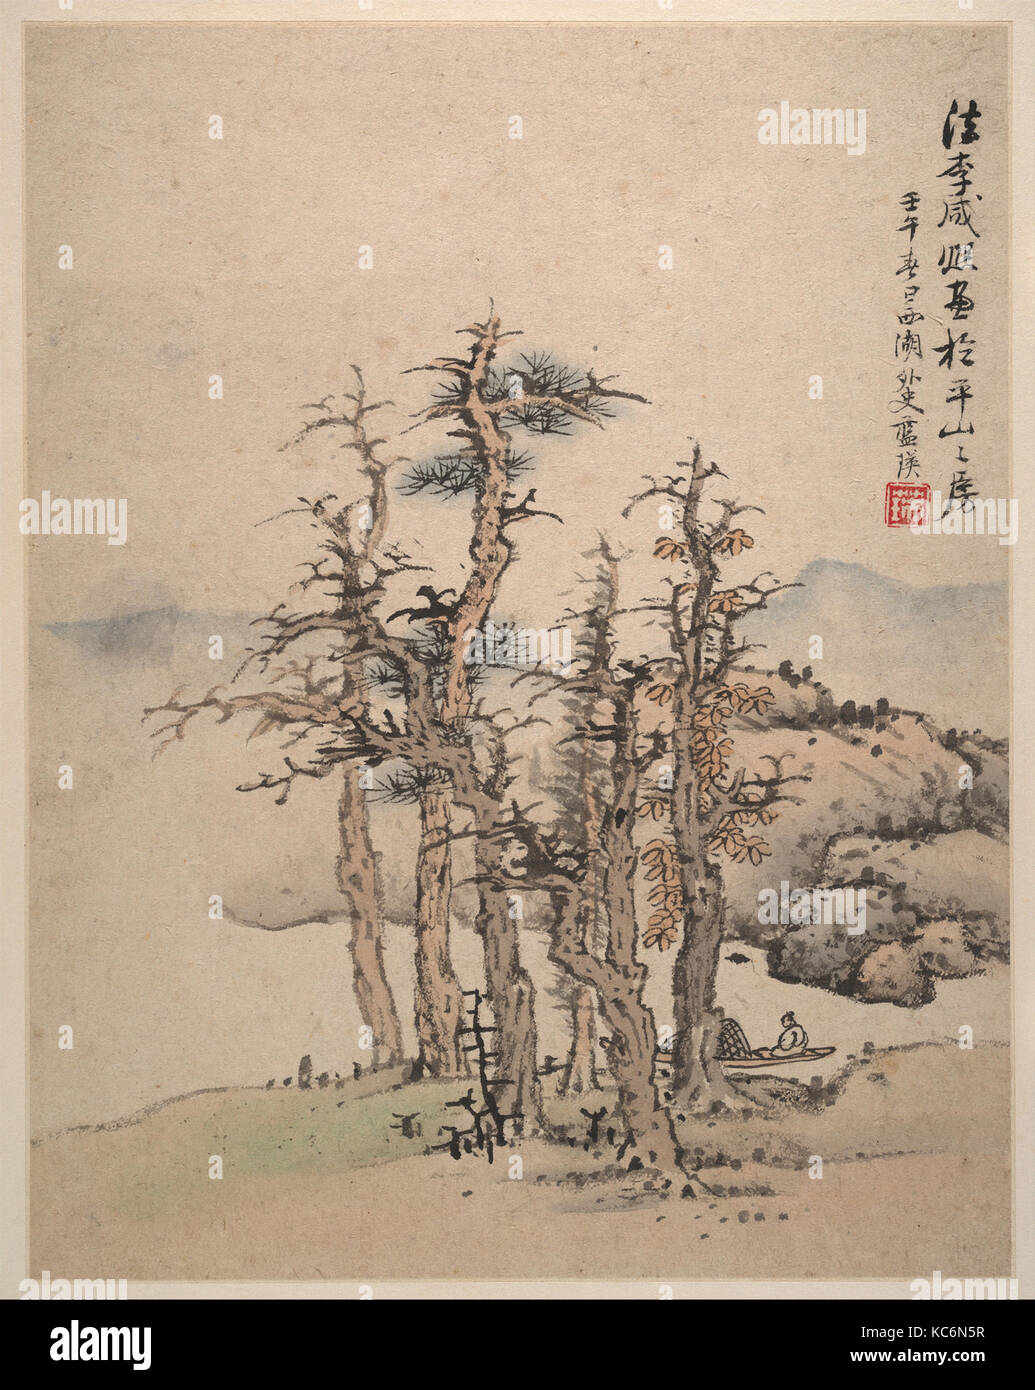 明 藍瑛 仿宋元山水圖 冊 紙本, Landscapes after Song and Yuan masters, Lan Ying, dated 1642 Stock Photo